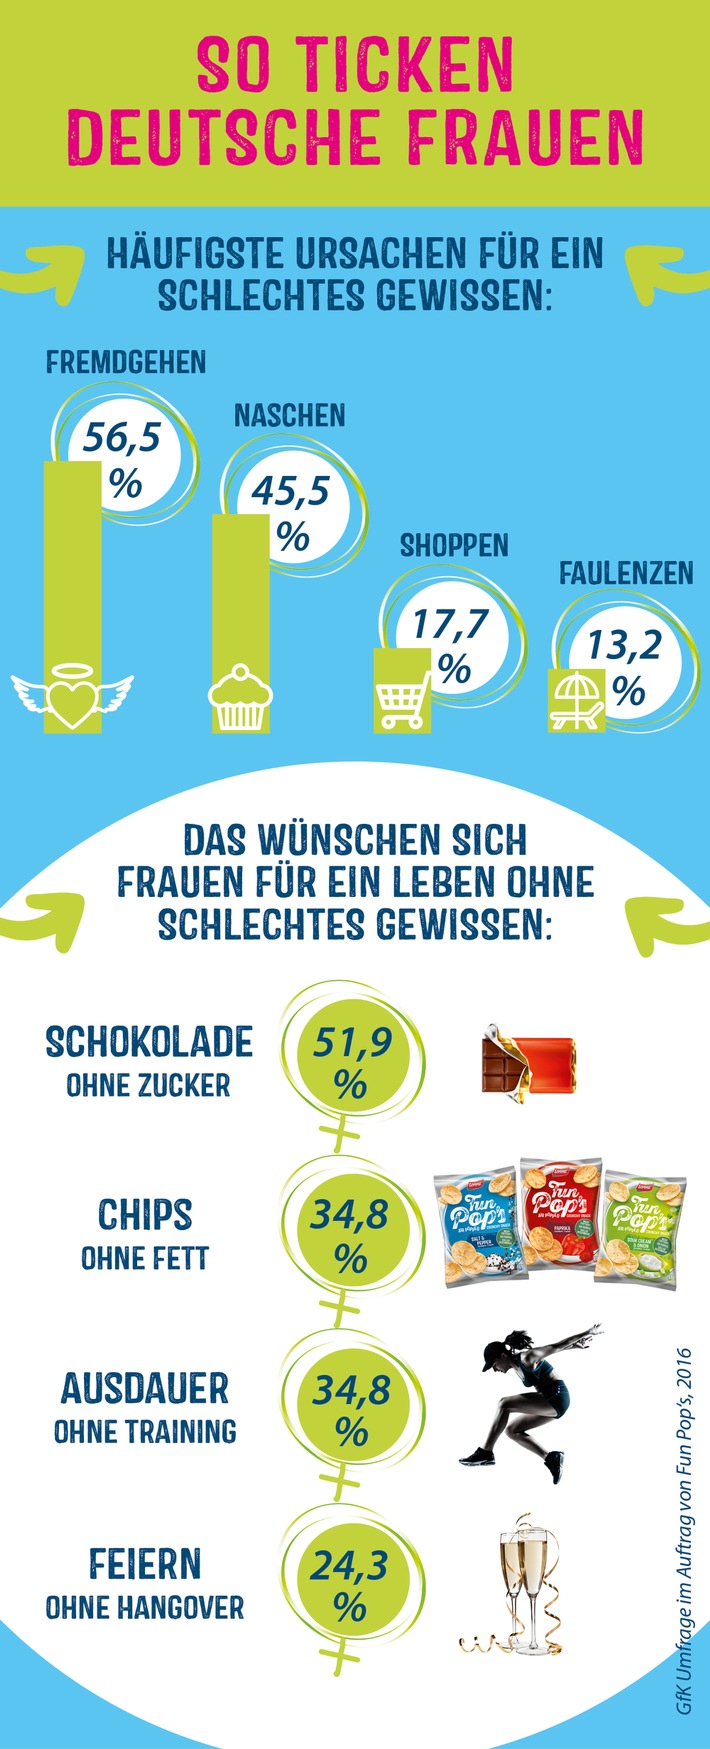 So ticken deutsche Frauen: Fremdgehen und Naschen als häufigste Ursache für schlechtes Gewissen - Chips ohne Fett und Schokolade ohne Zucker der meist geäußerte Wunsch